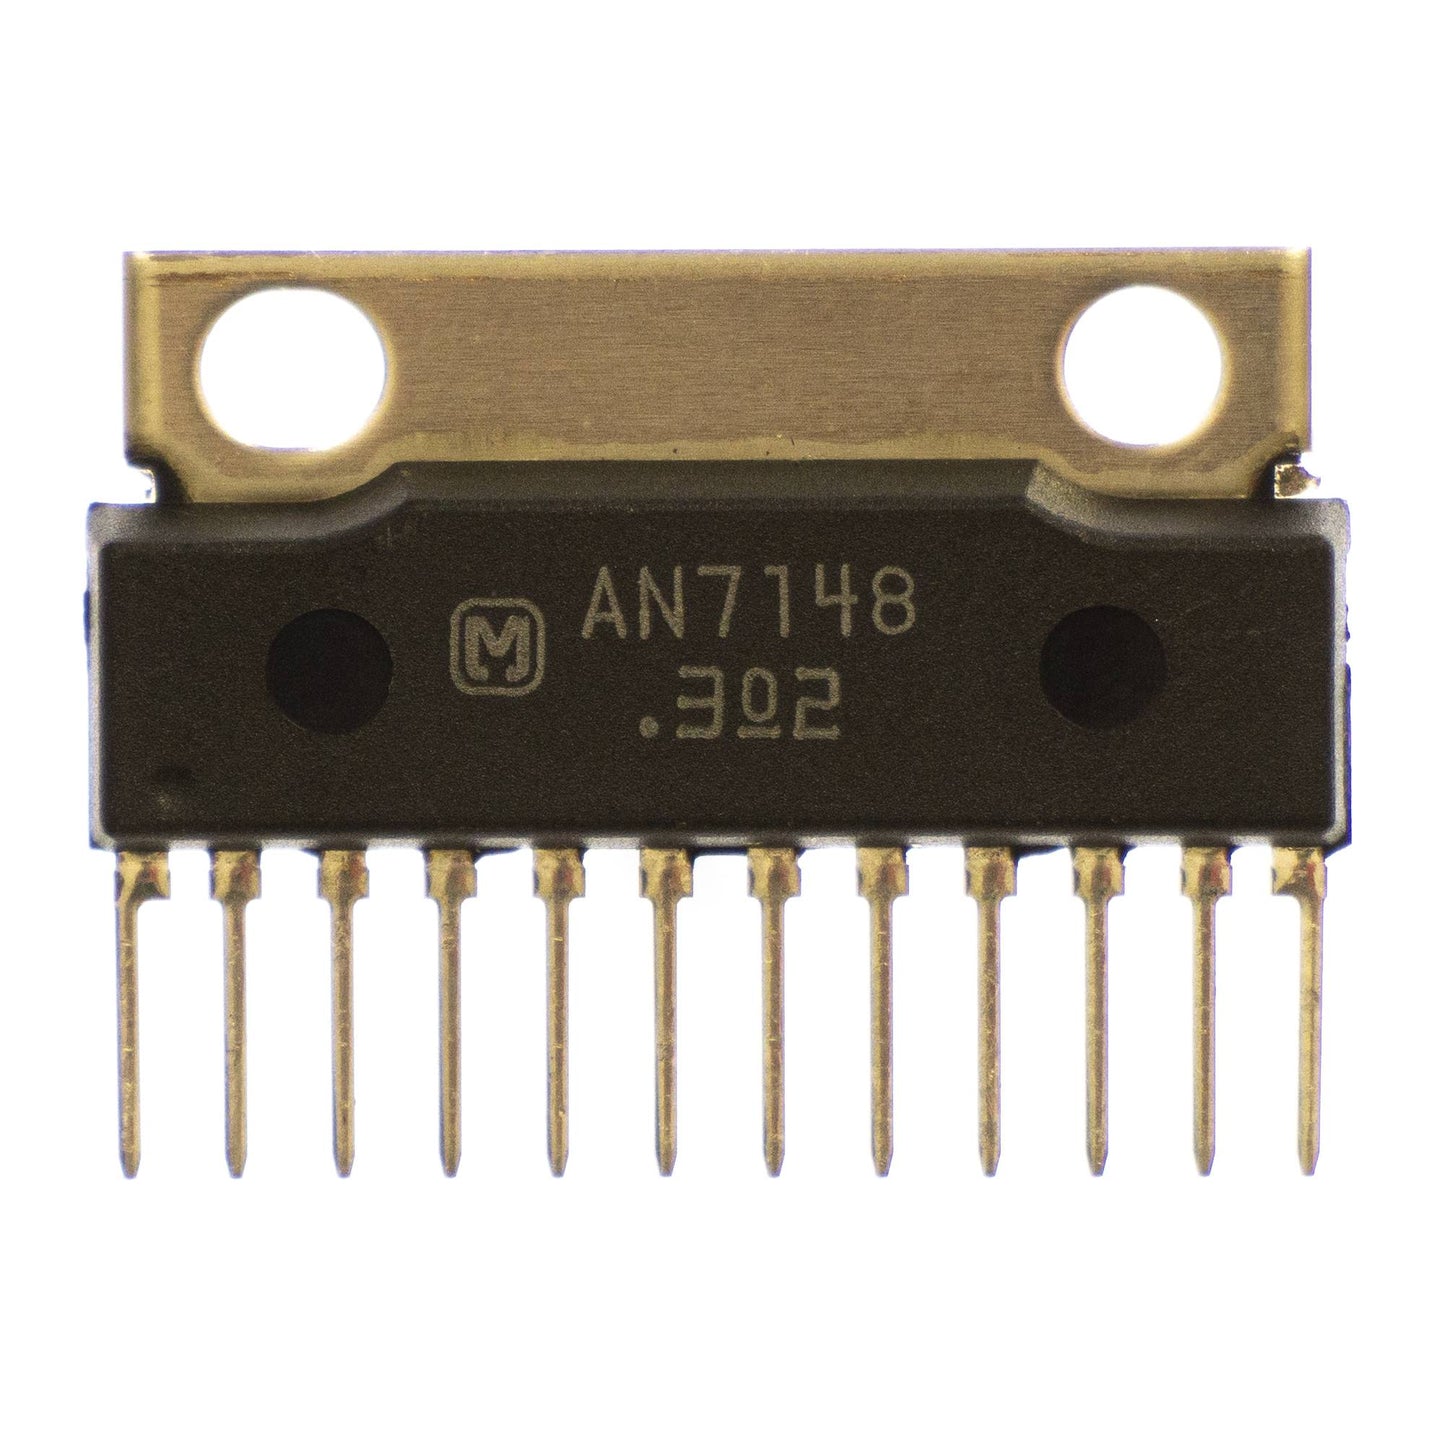 Matsushita AN7148 componente elettronico, circuito integrato, transistor, 12 contatti